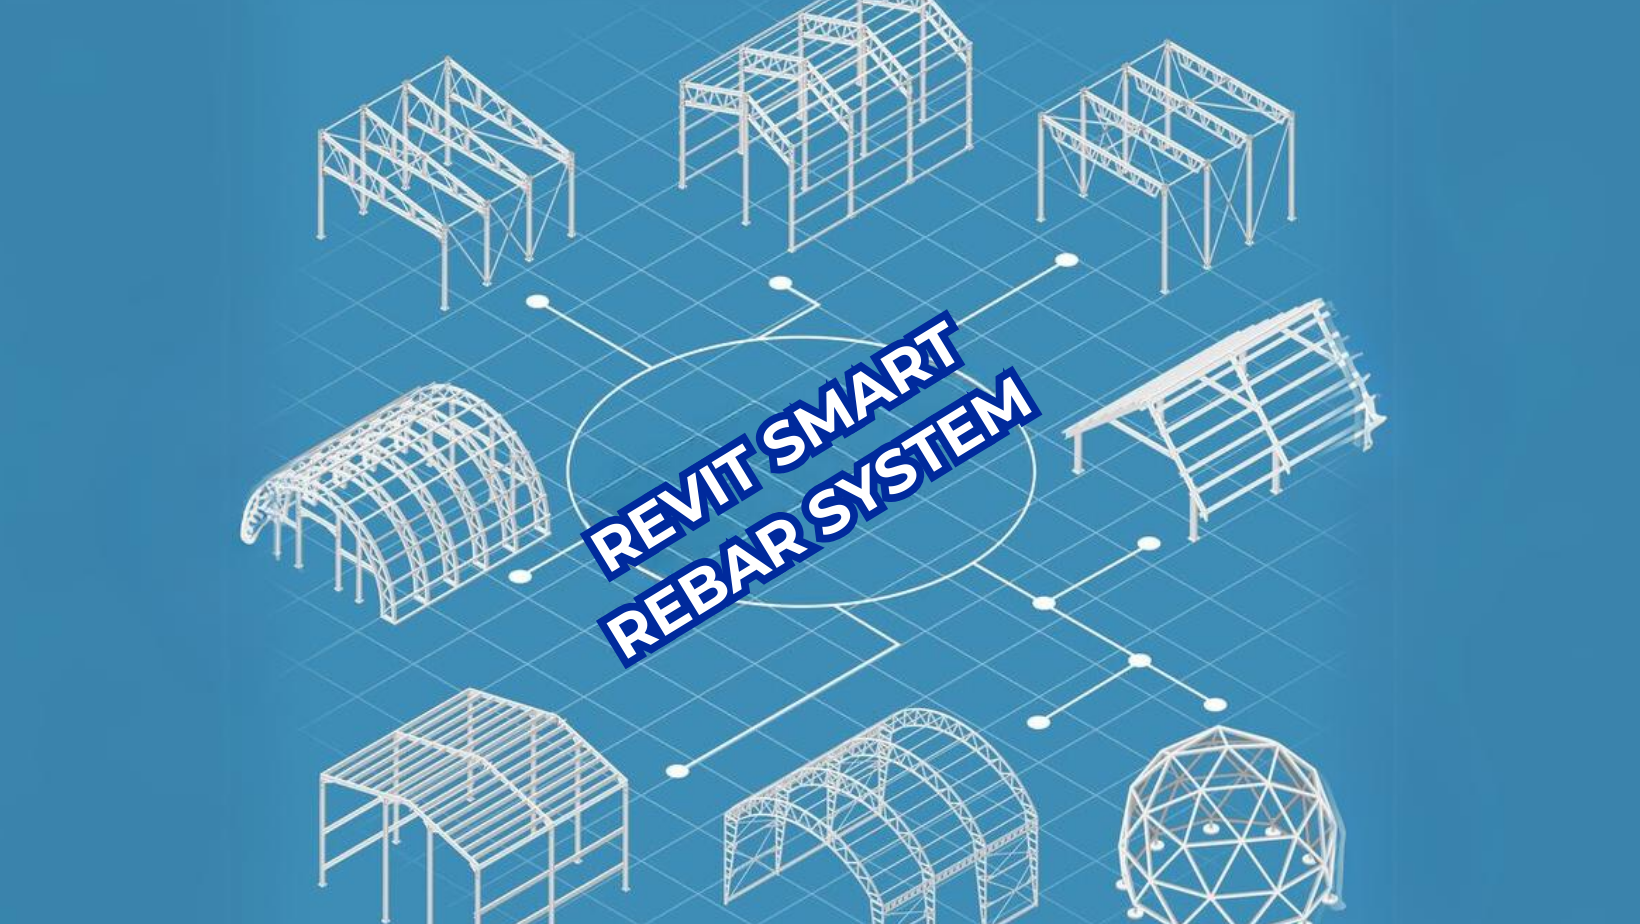 Revit Smart Rebar System – Rebar Preset